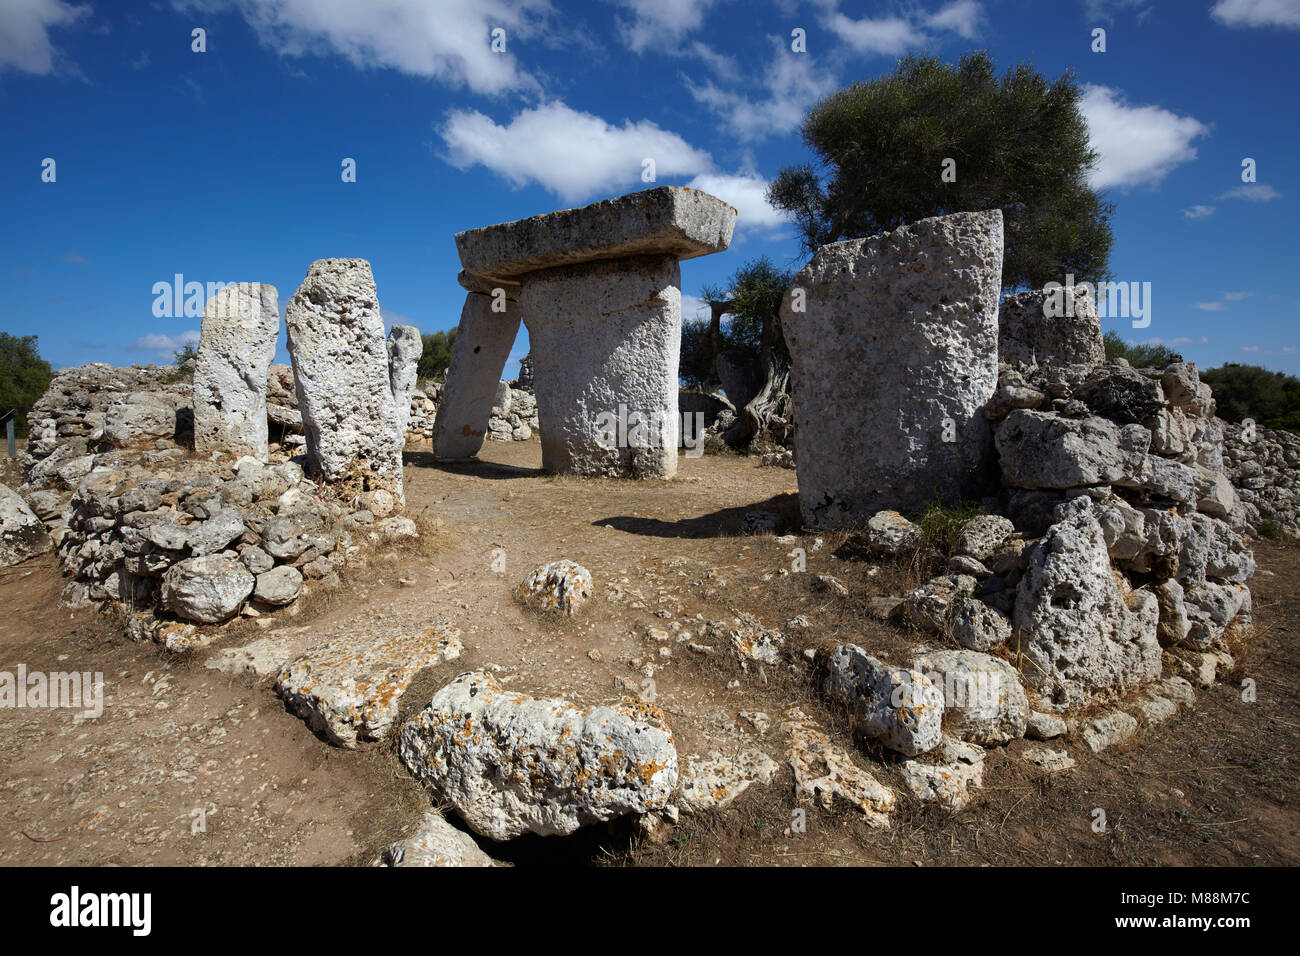 El monolito megalíticas piedras en Talatí de Dalt asentamiento, Menorca, Islas Baleares, España Foto de stock